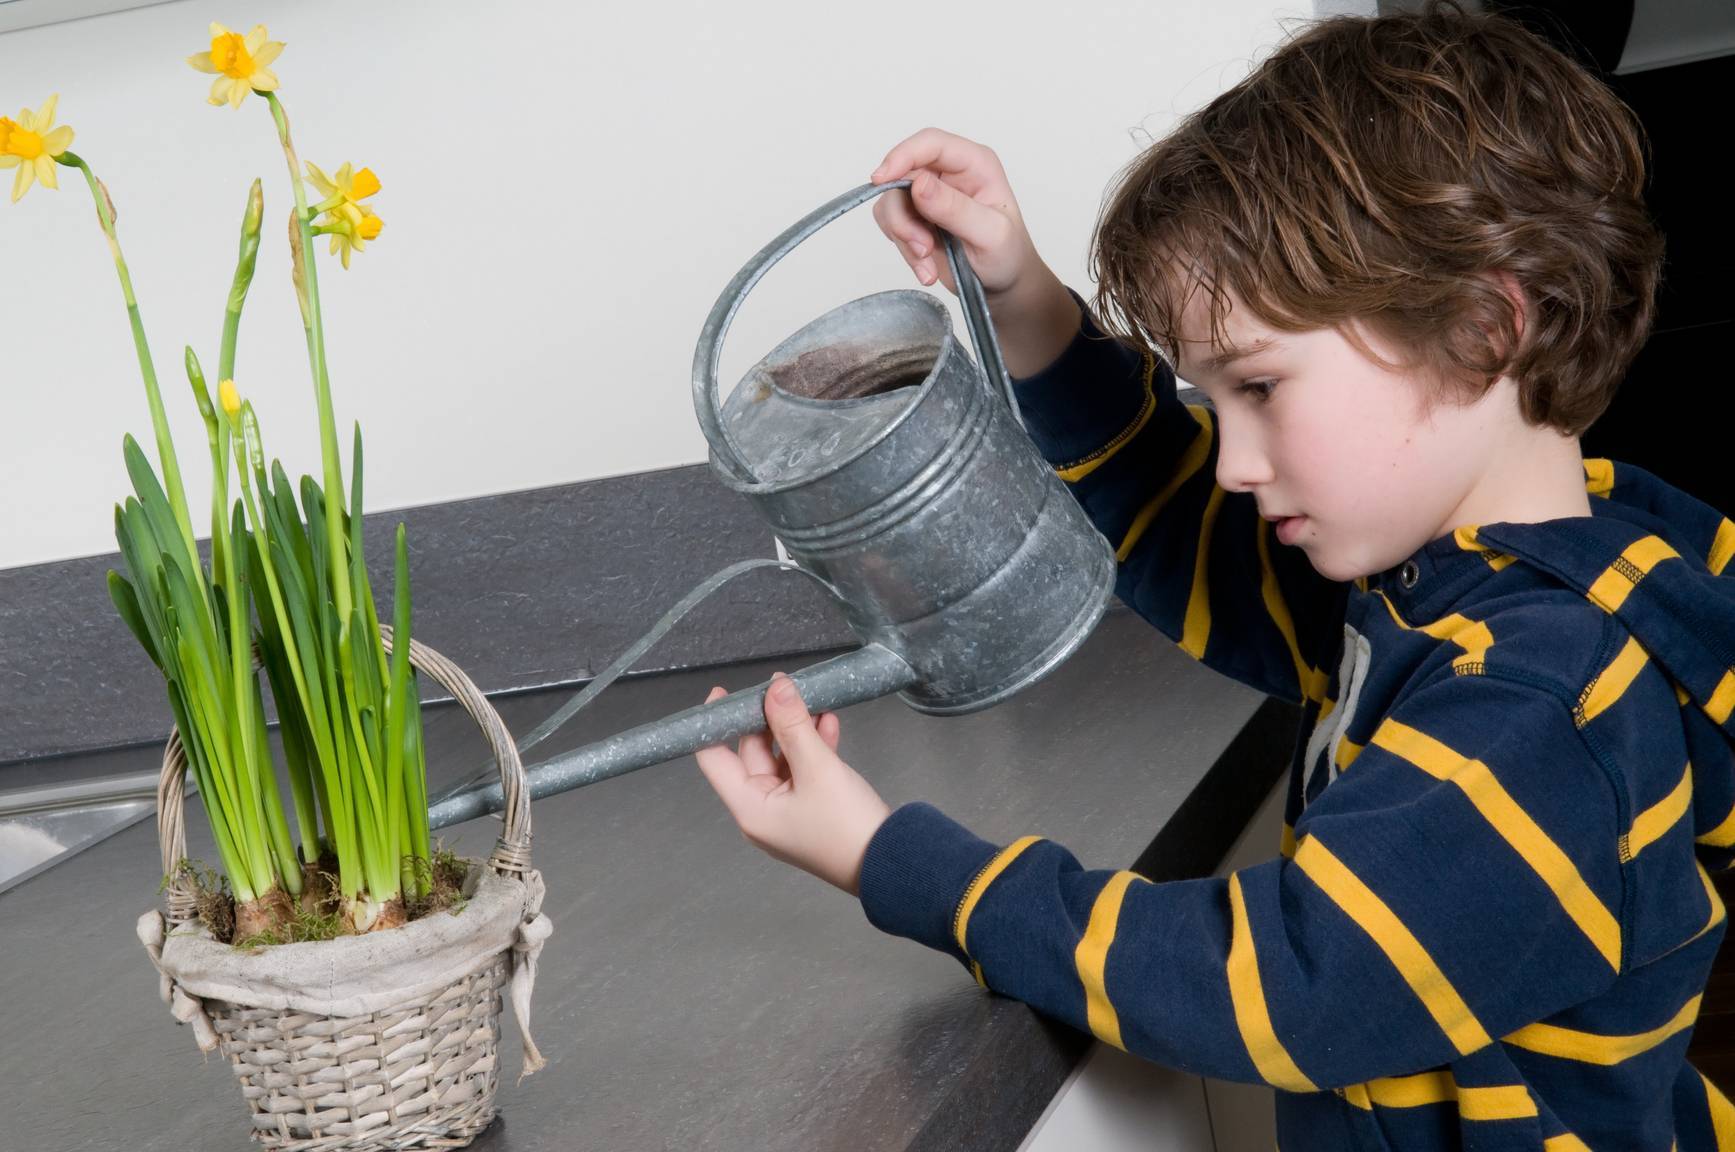 Правильный полив фиалок в домашних условиях: как поливать растения в горшке